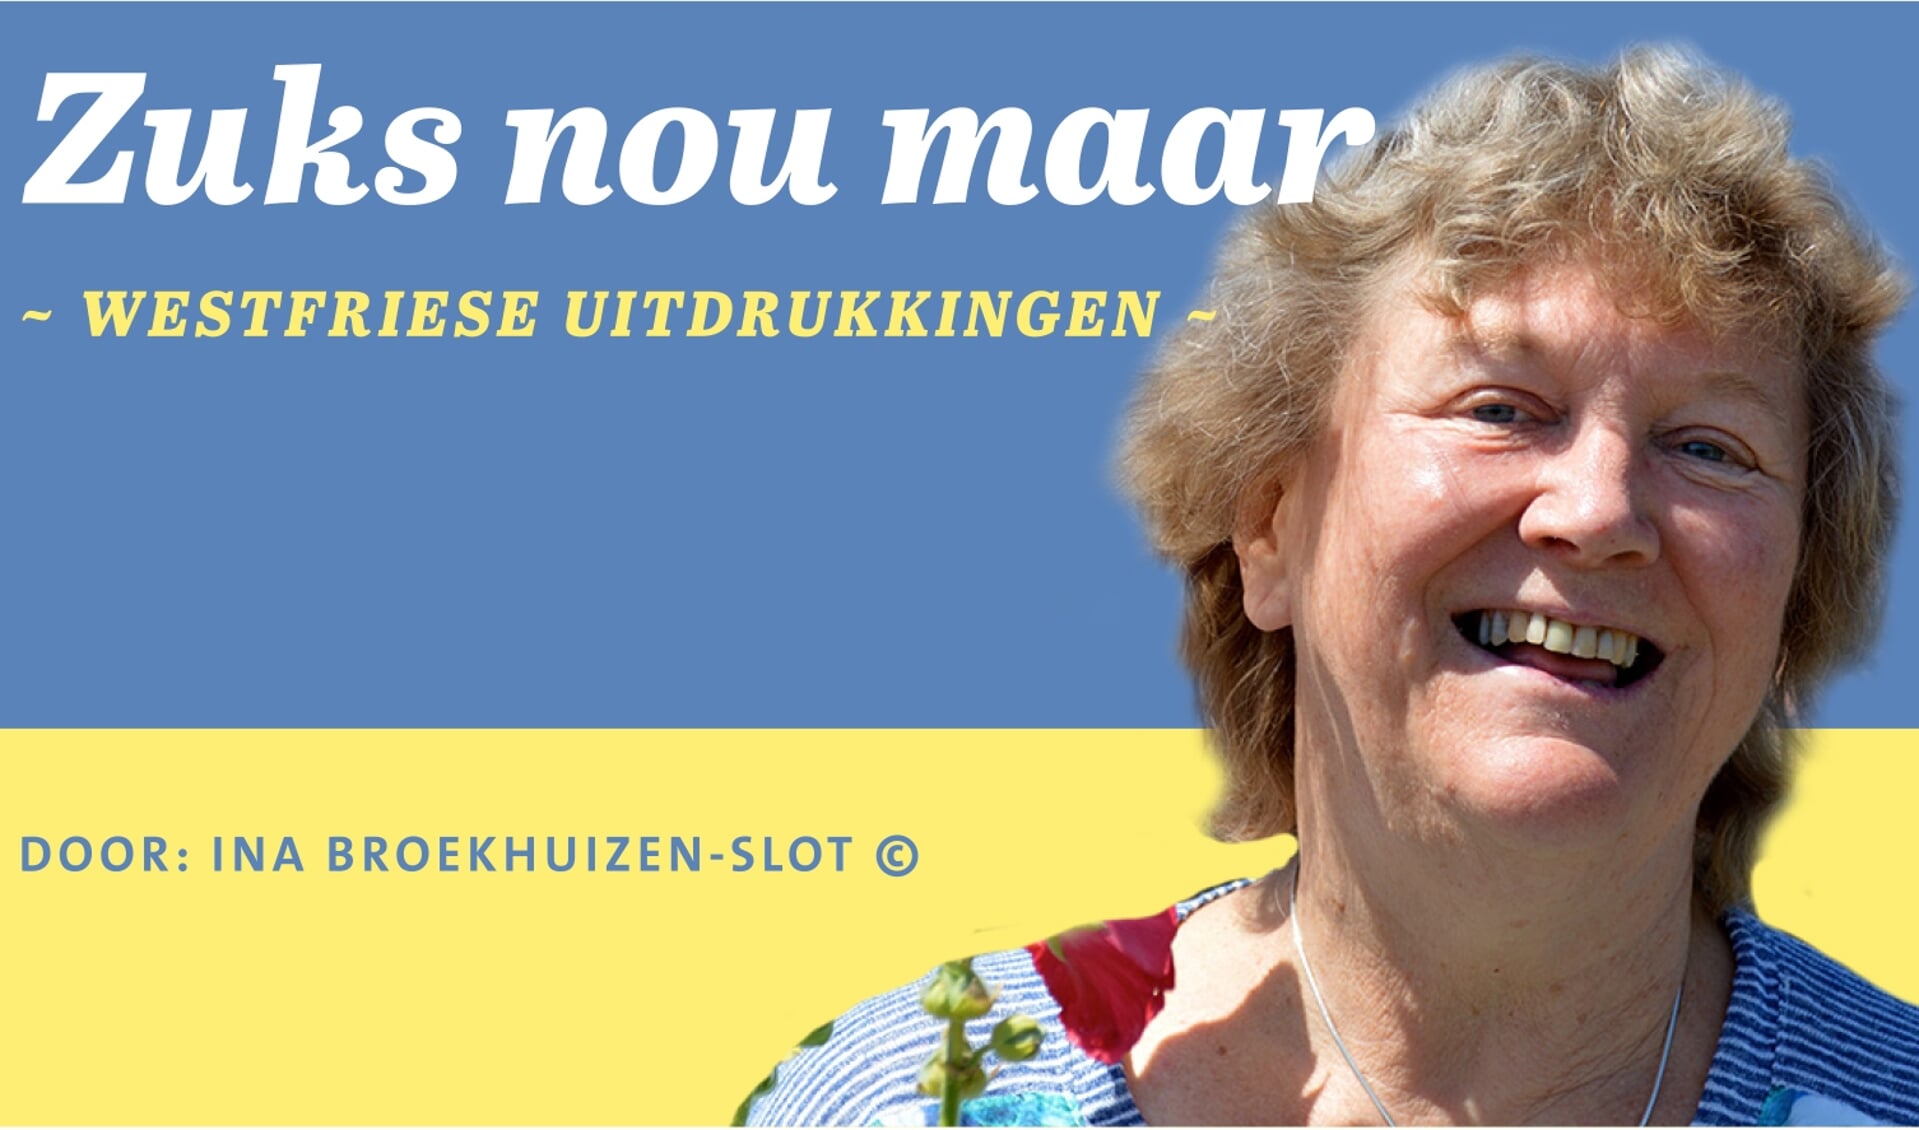 Kenner Ina Broekhuizen-Slot verteld in haar rubriek Zuks nou maar over typische Westfriese uitdrukkingen.